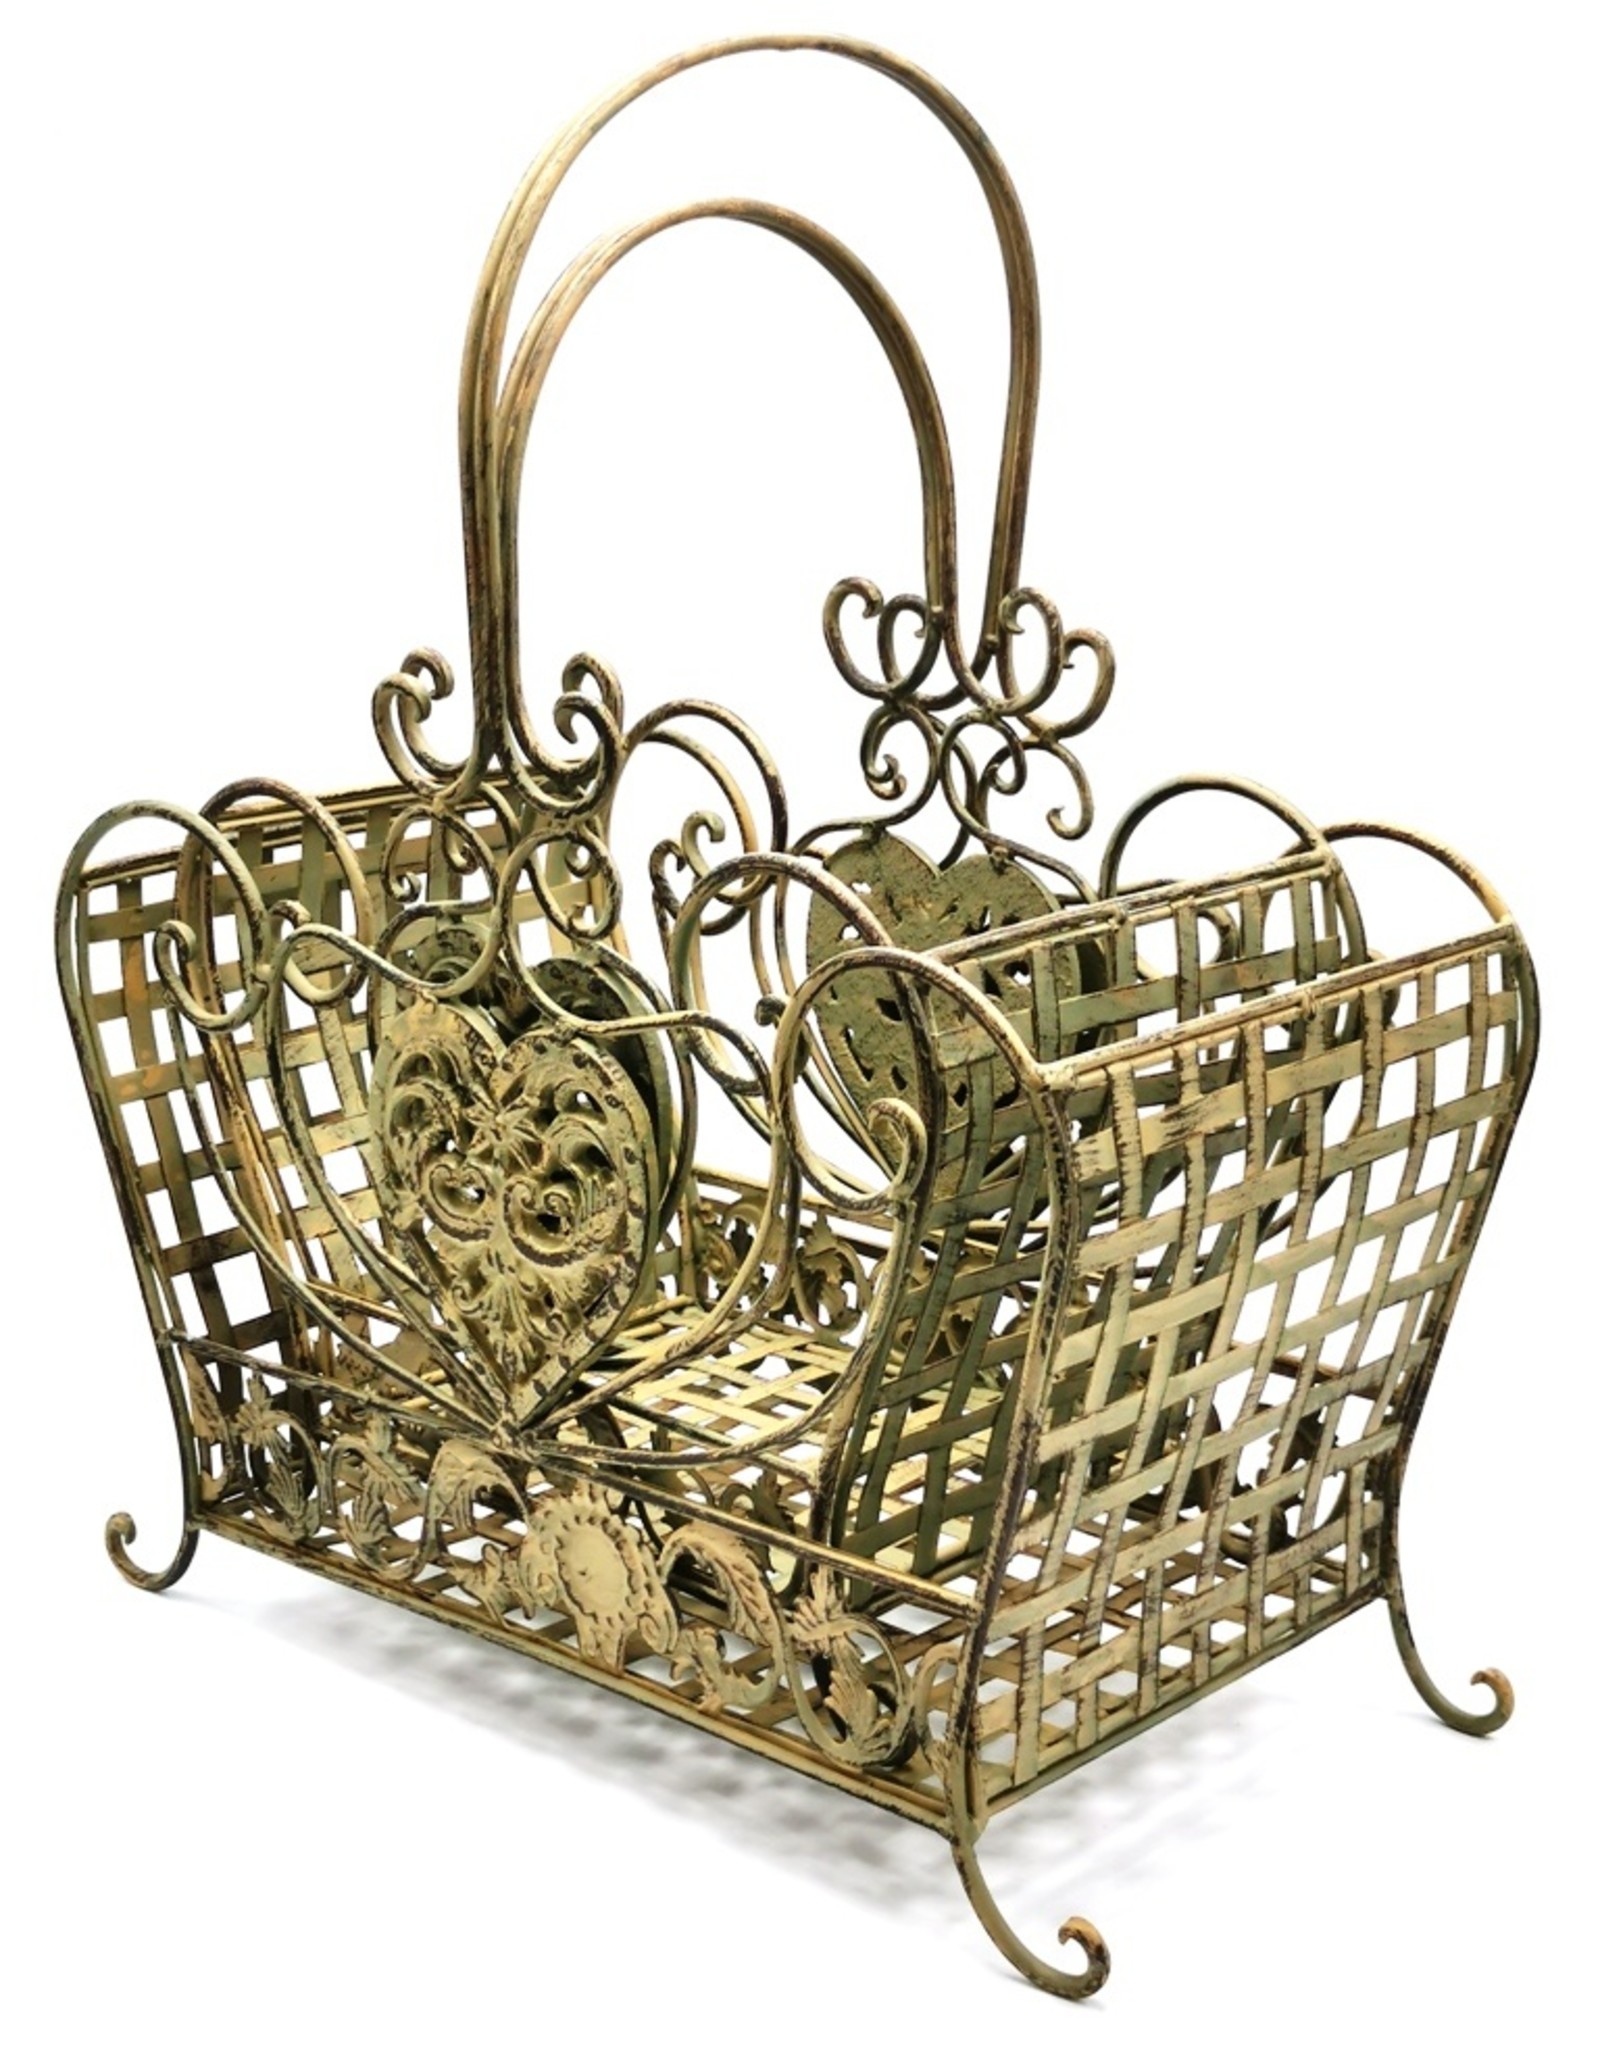 Trukado Miscellaneous - Iron Vintage baskets set - 2 sizes